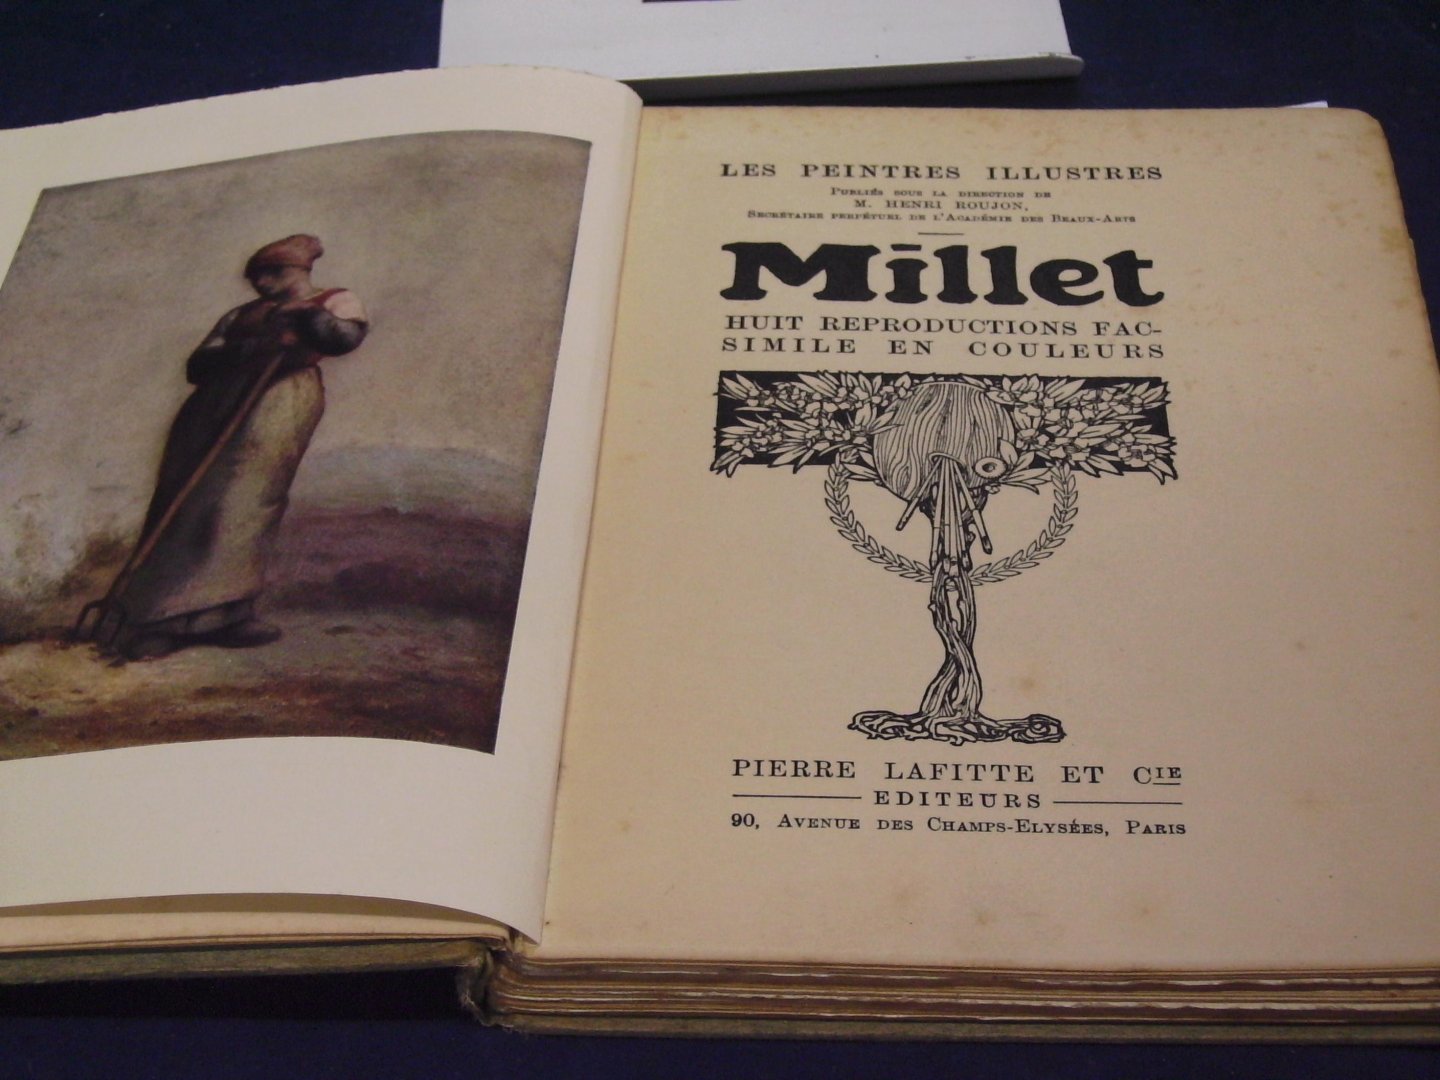 Roujon, M. Henri - Les peintres illustres Millet ( N0. 19.) Millet huit reproductions facsimile en couleurs